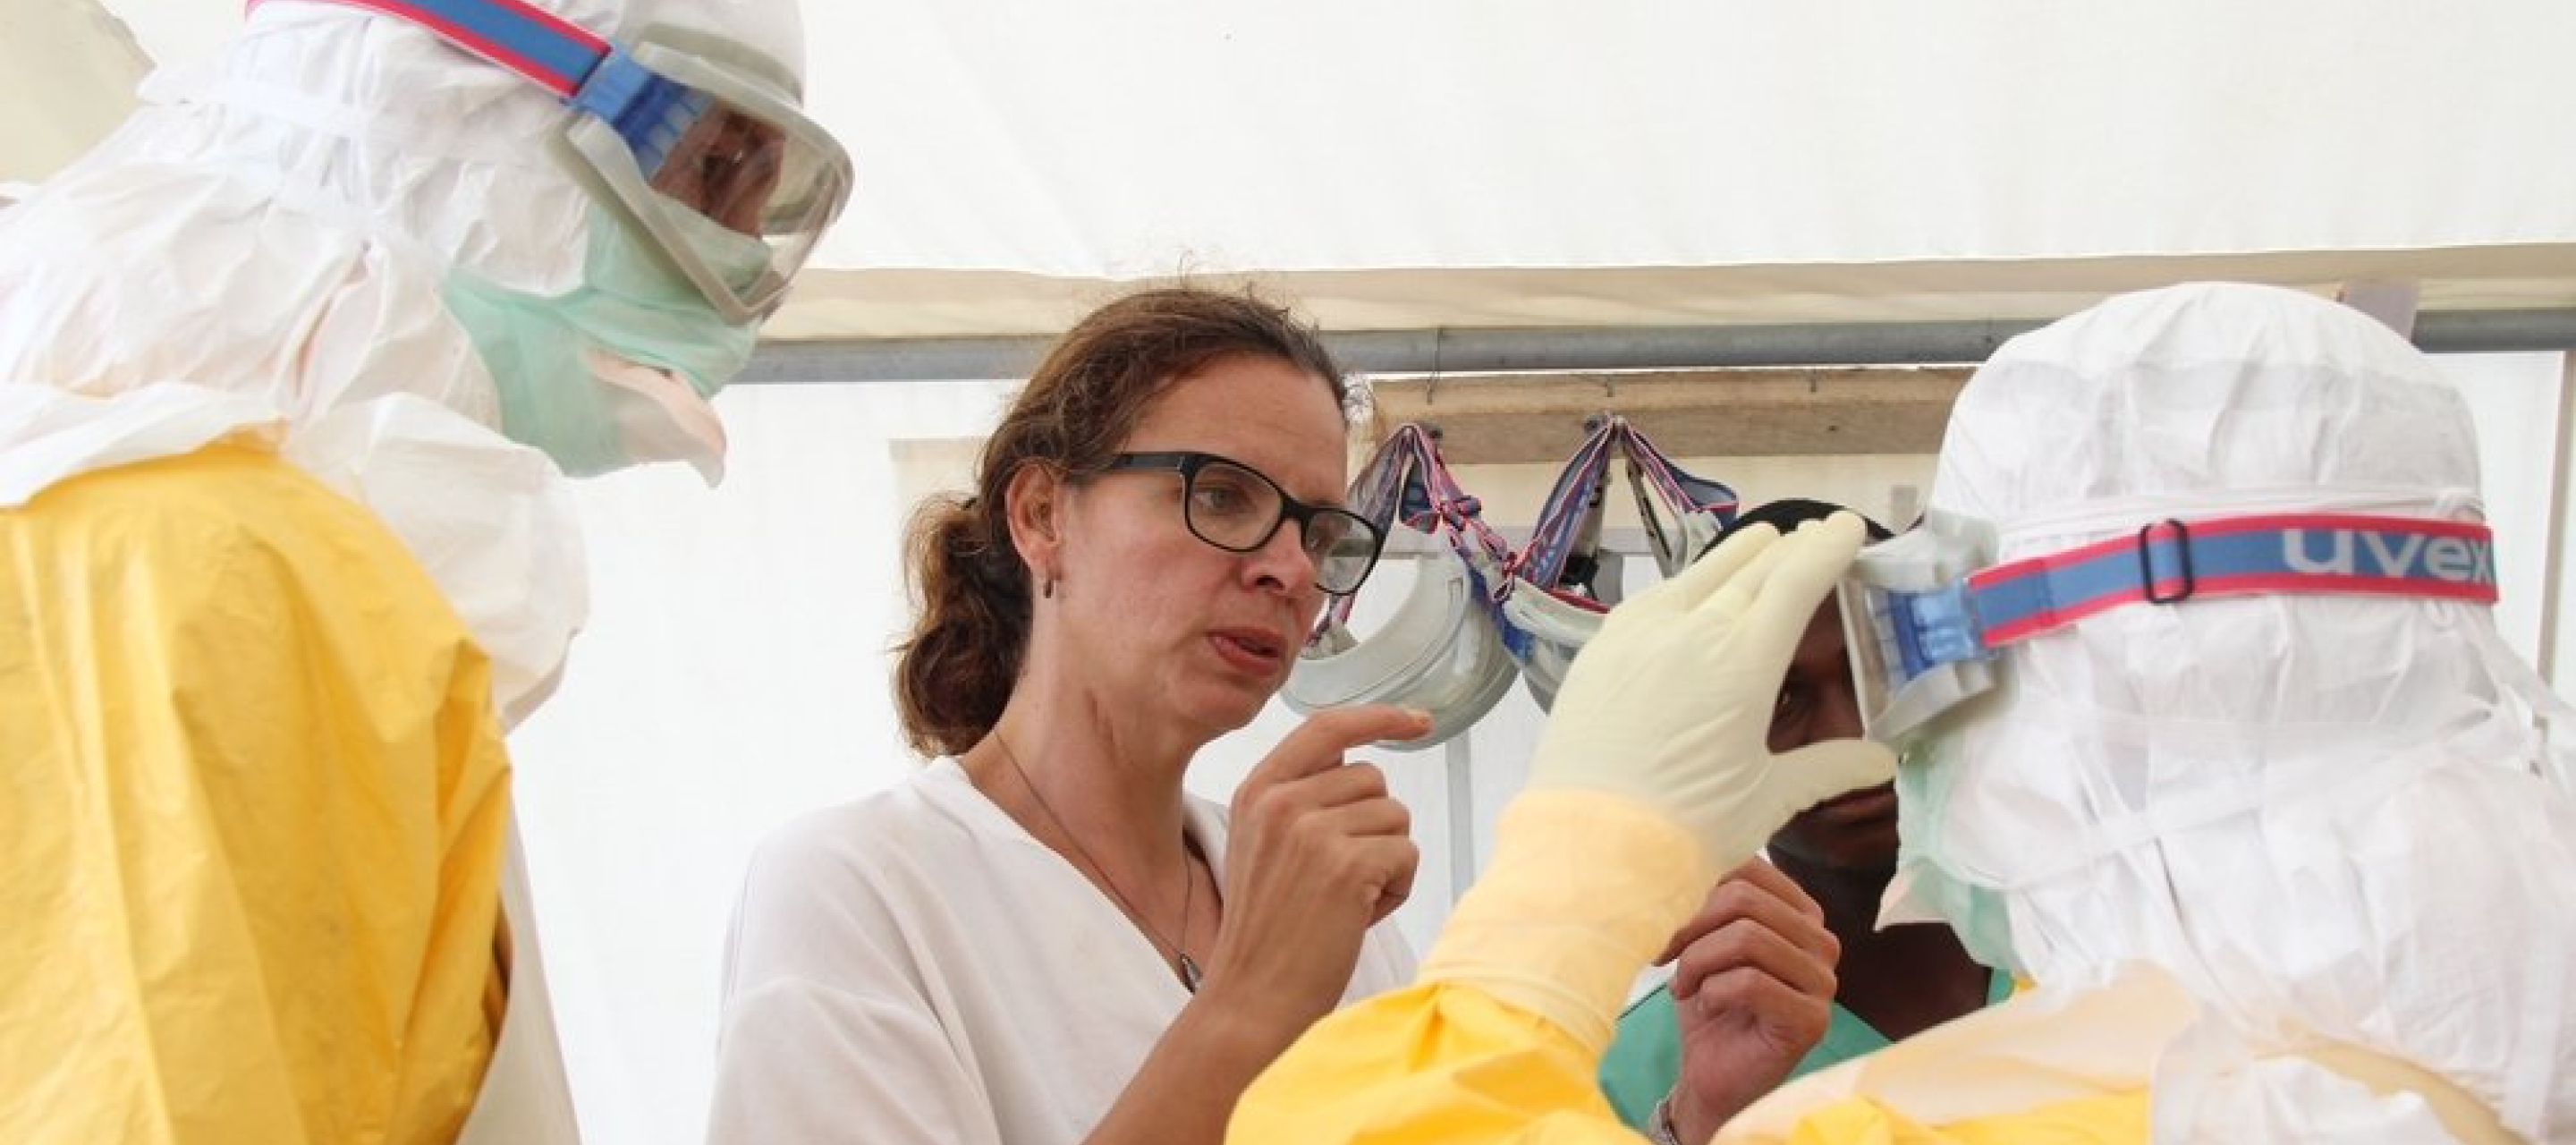 Schutzausrüstung anlegen für Ebola-Einsatz.